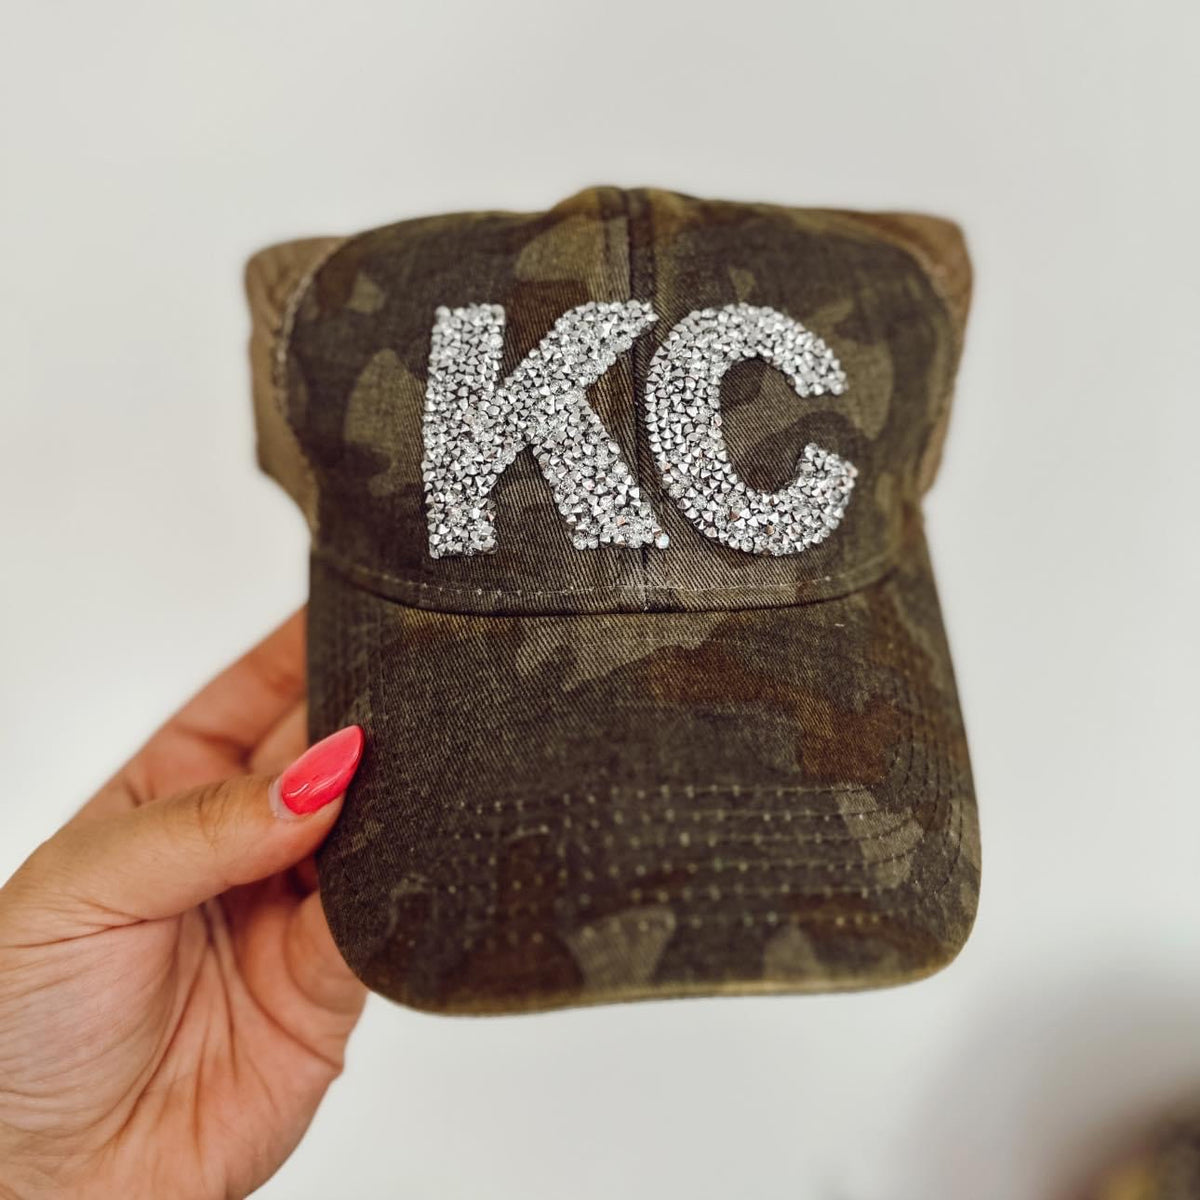 KC hat